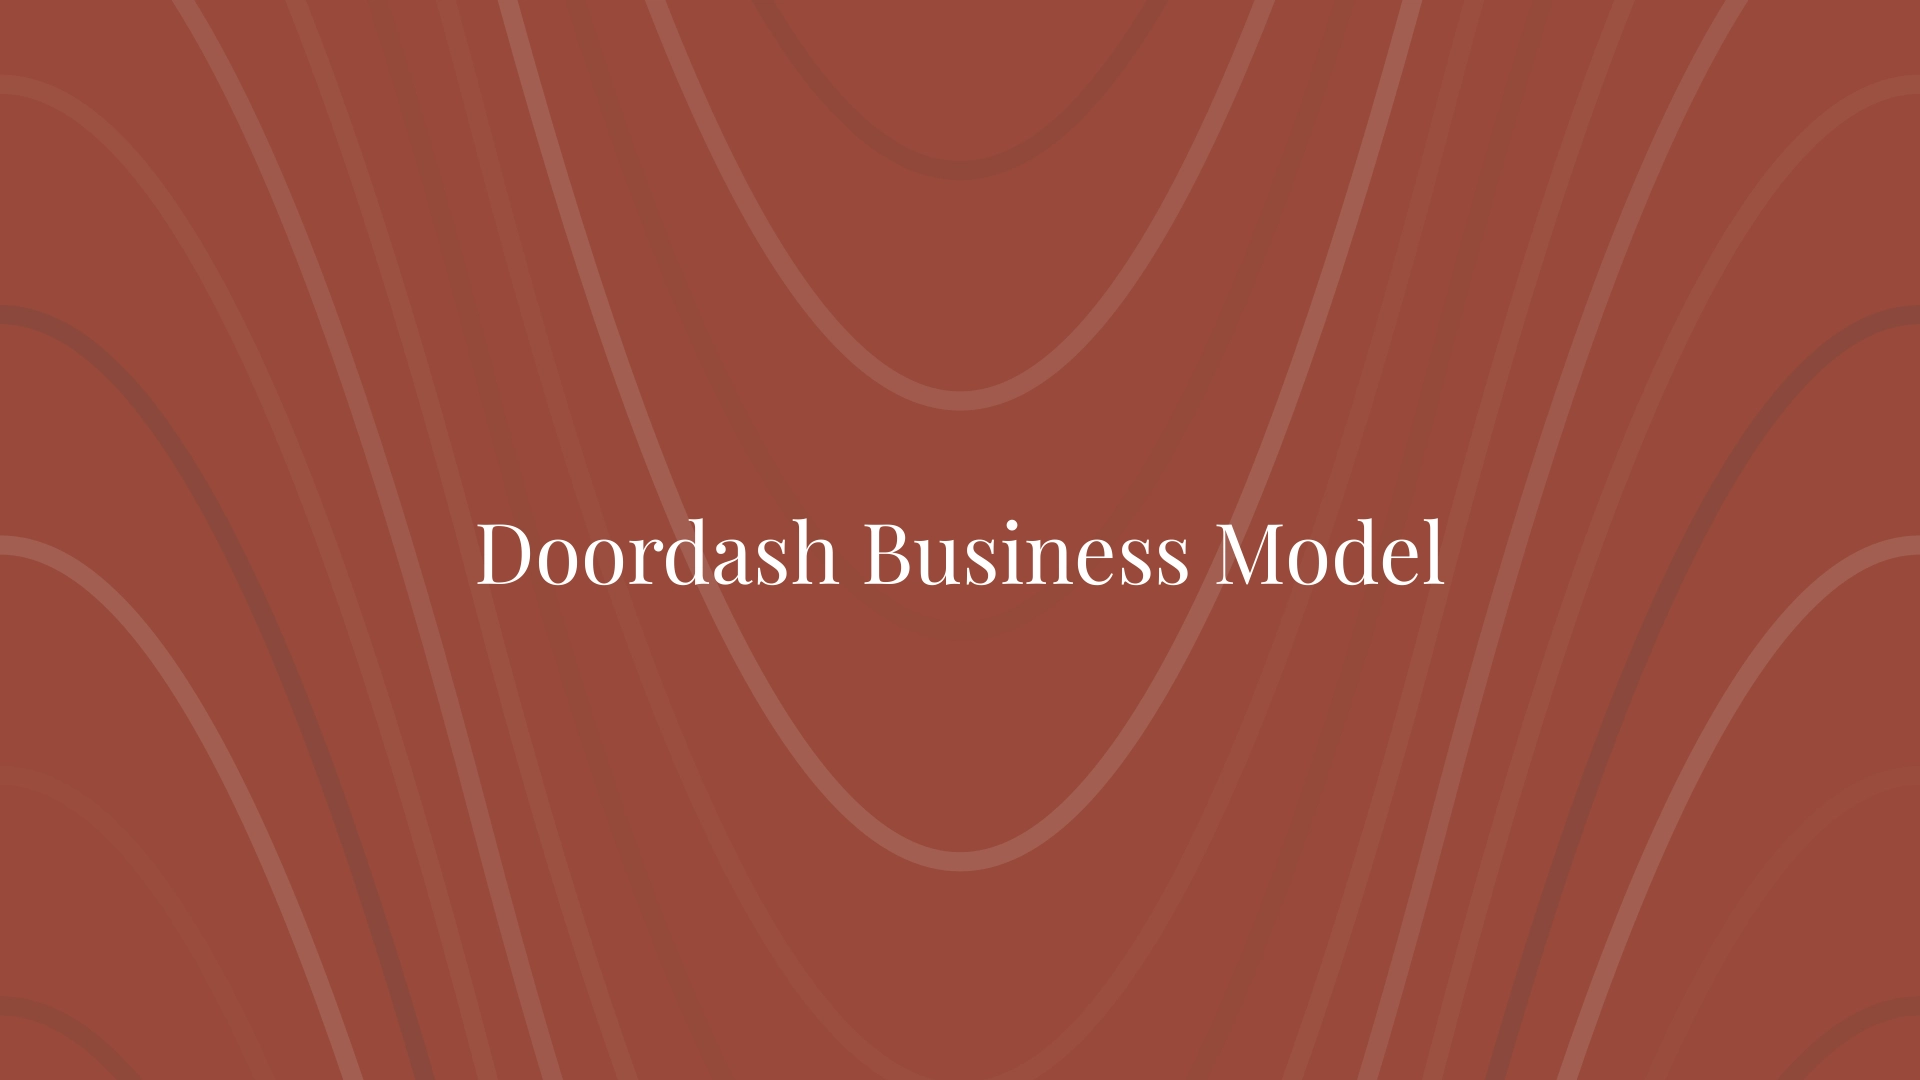 Modelo de negocio de Doordash